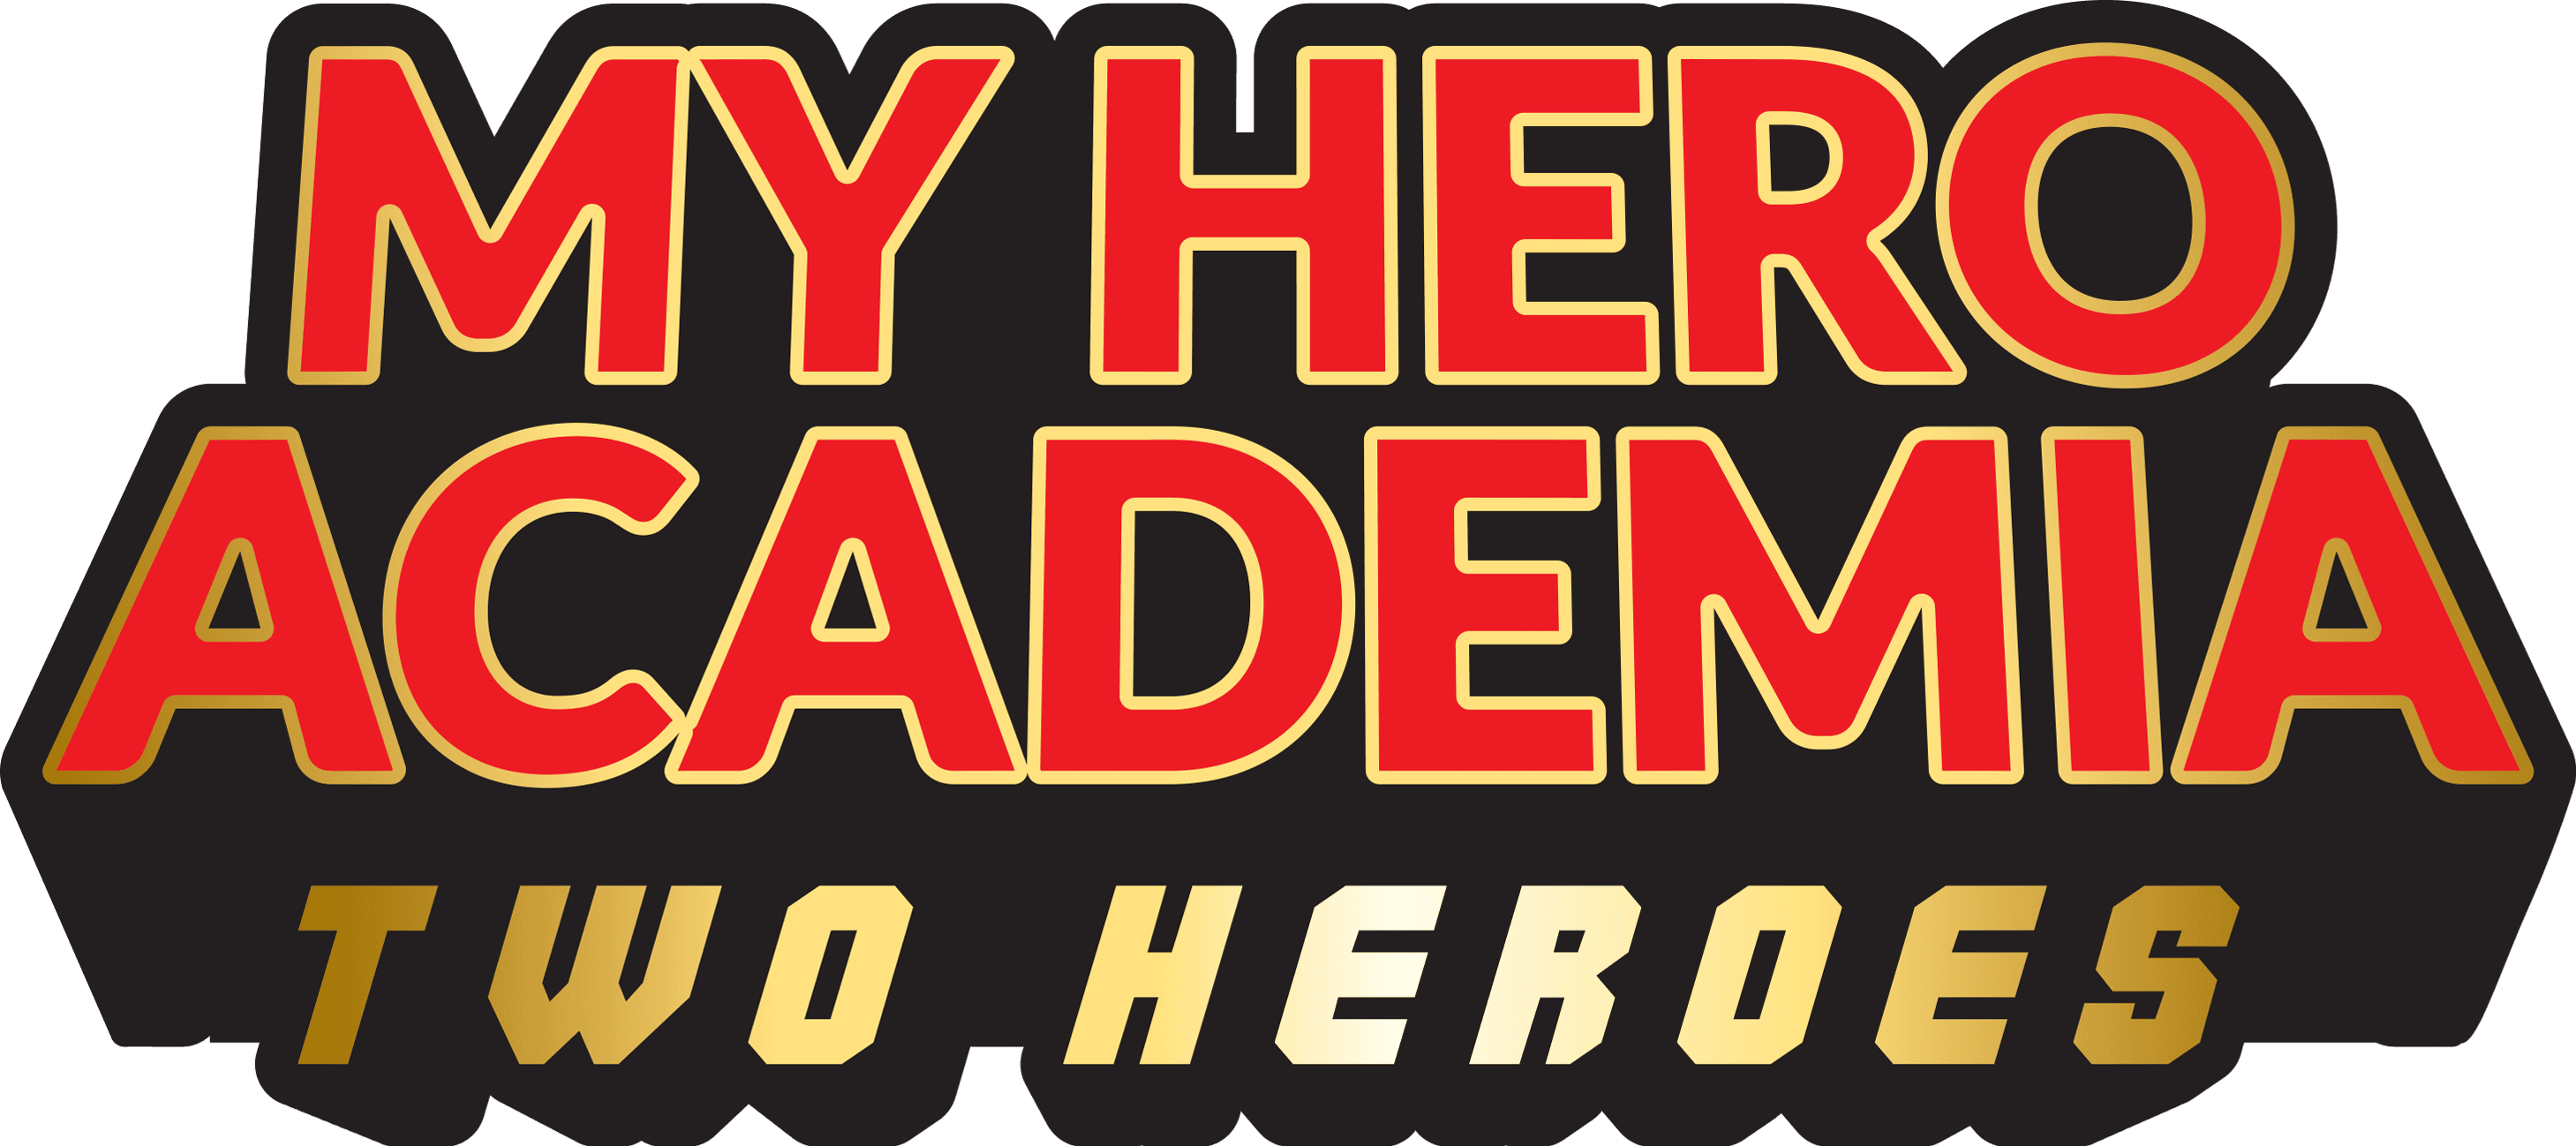 My Hero Academia: Two Heroes logo